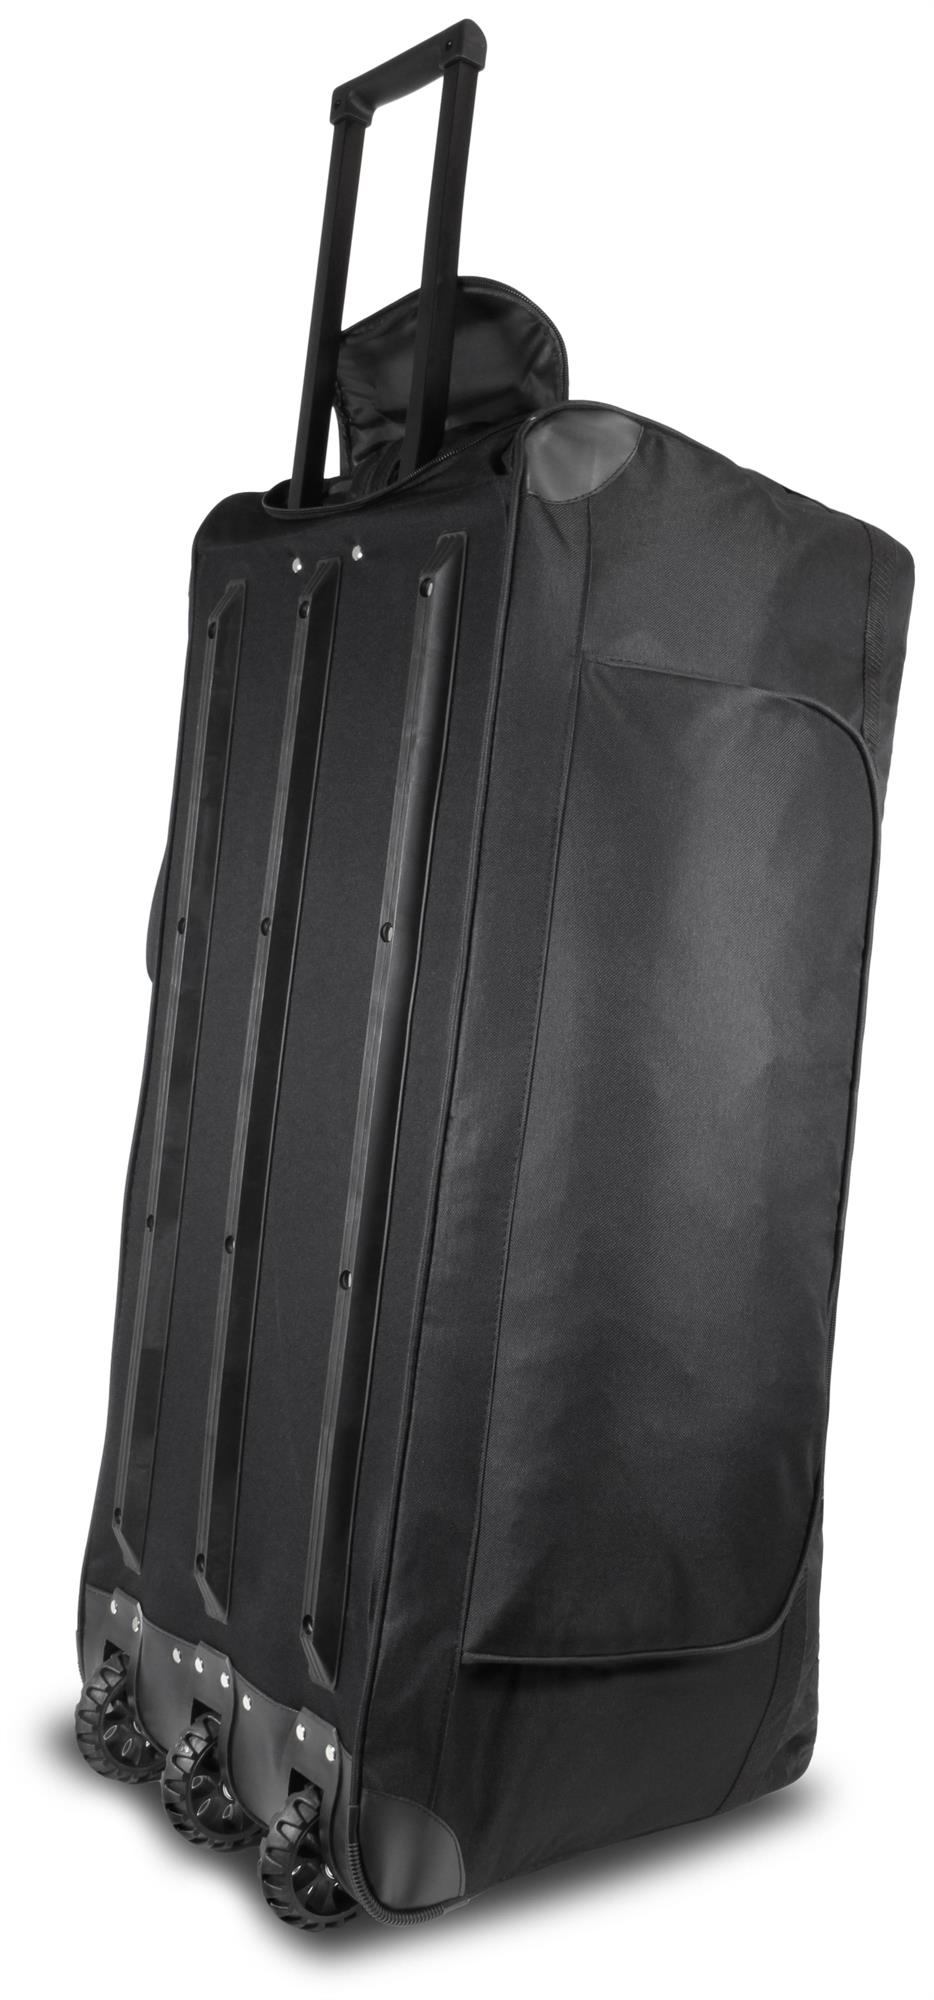 Trolley XXL Rollenkoffer große Reisetasche mit Rollen 150 Liter Schwarz